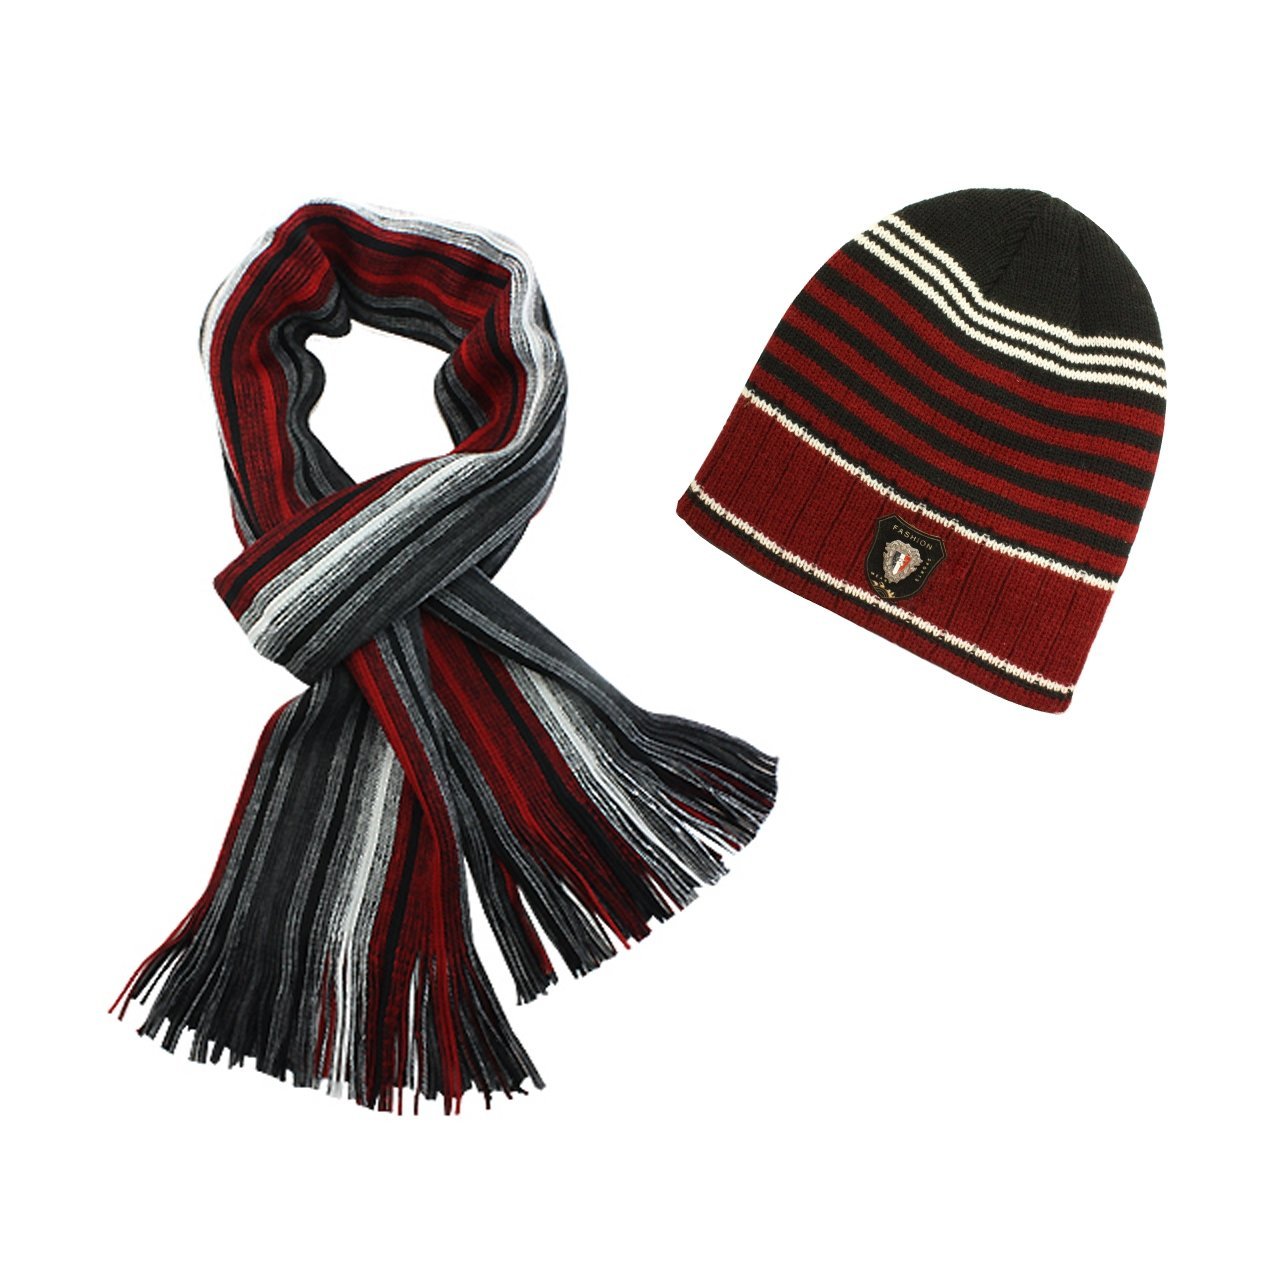 Dahlia 100% Acrylic Men's Fashion Classic Colorful Stripes Cap Hat Scarf Set - Various Colors $24.95